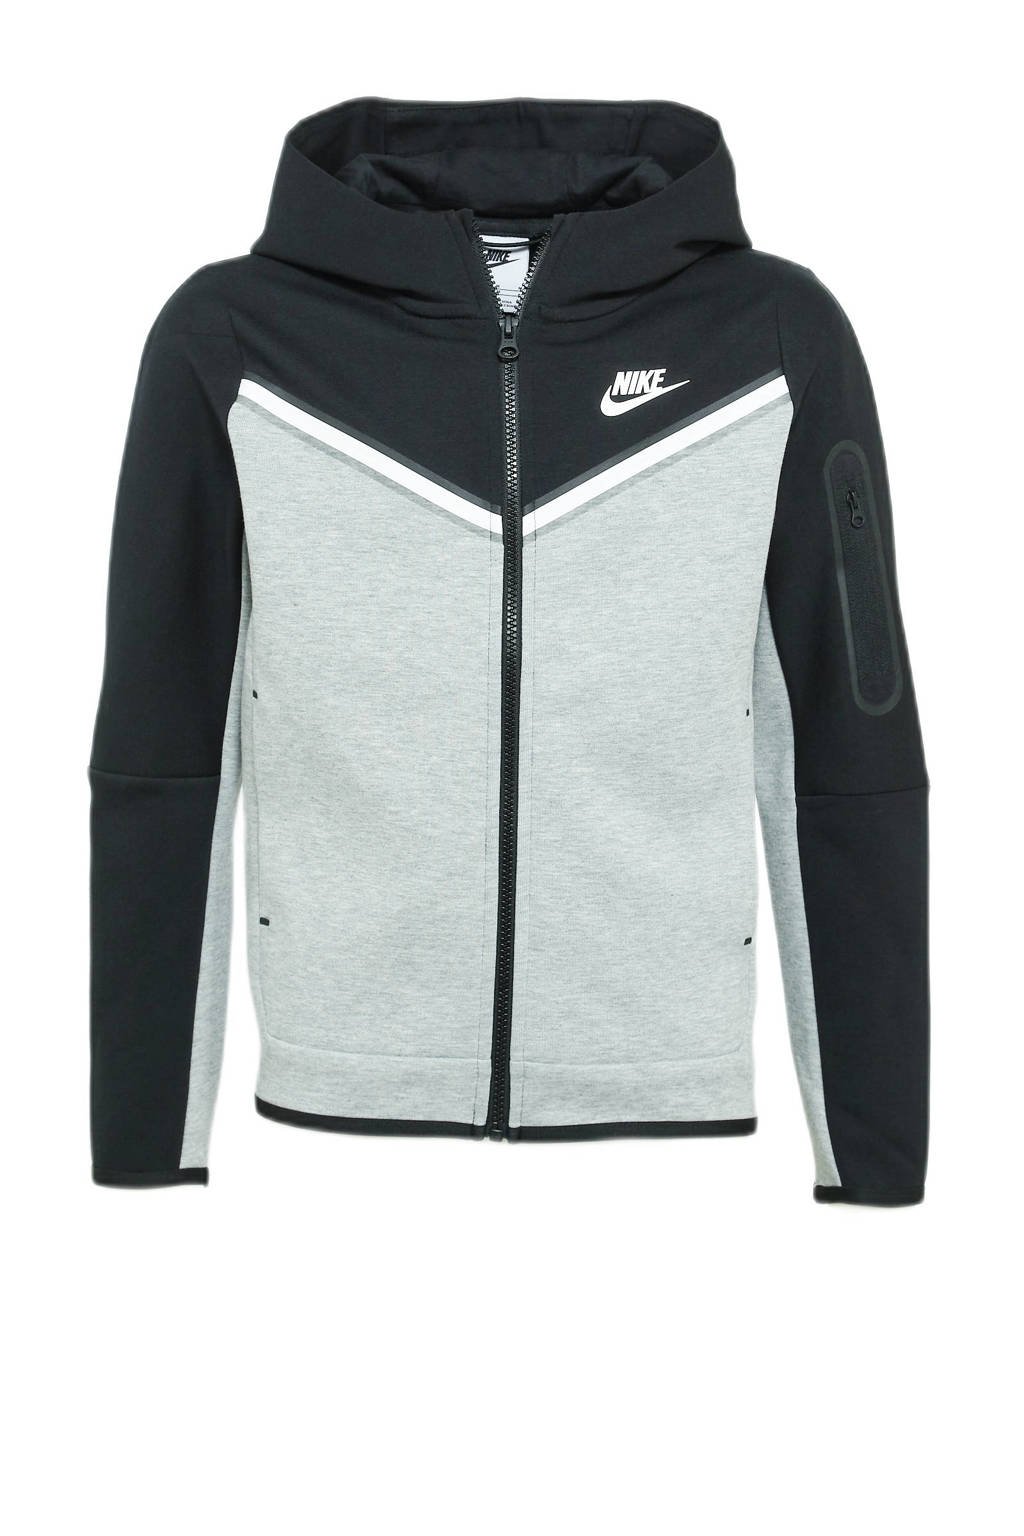 gevaarlijk personeel afbreken Nike vest zwart/grijs | wehkamp